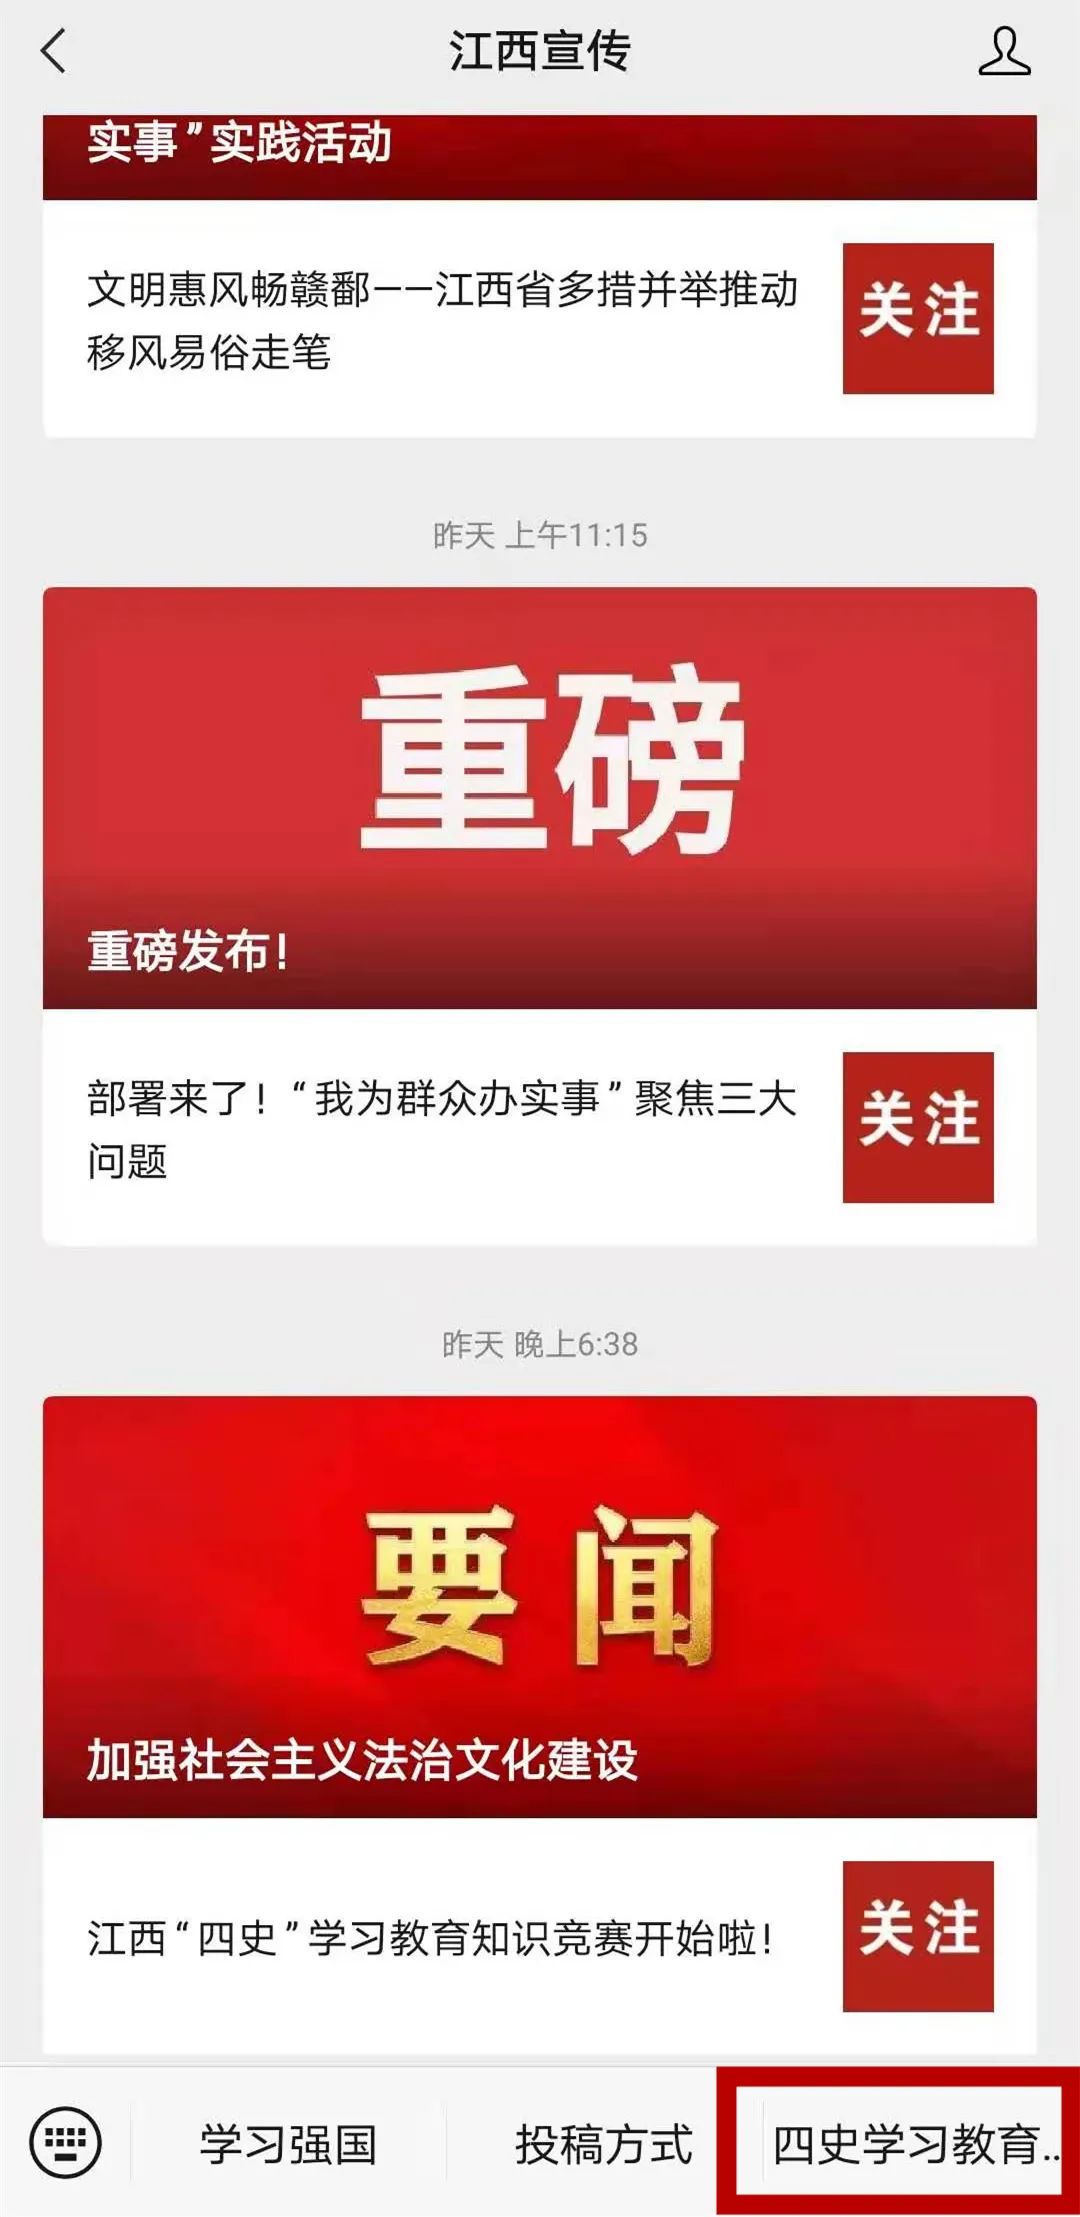 参赛者可以通过关注"江西宣传" "江西日报"微信公众号,点击互动交流